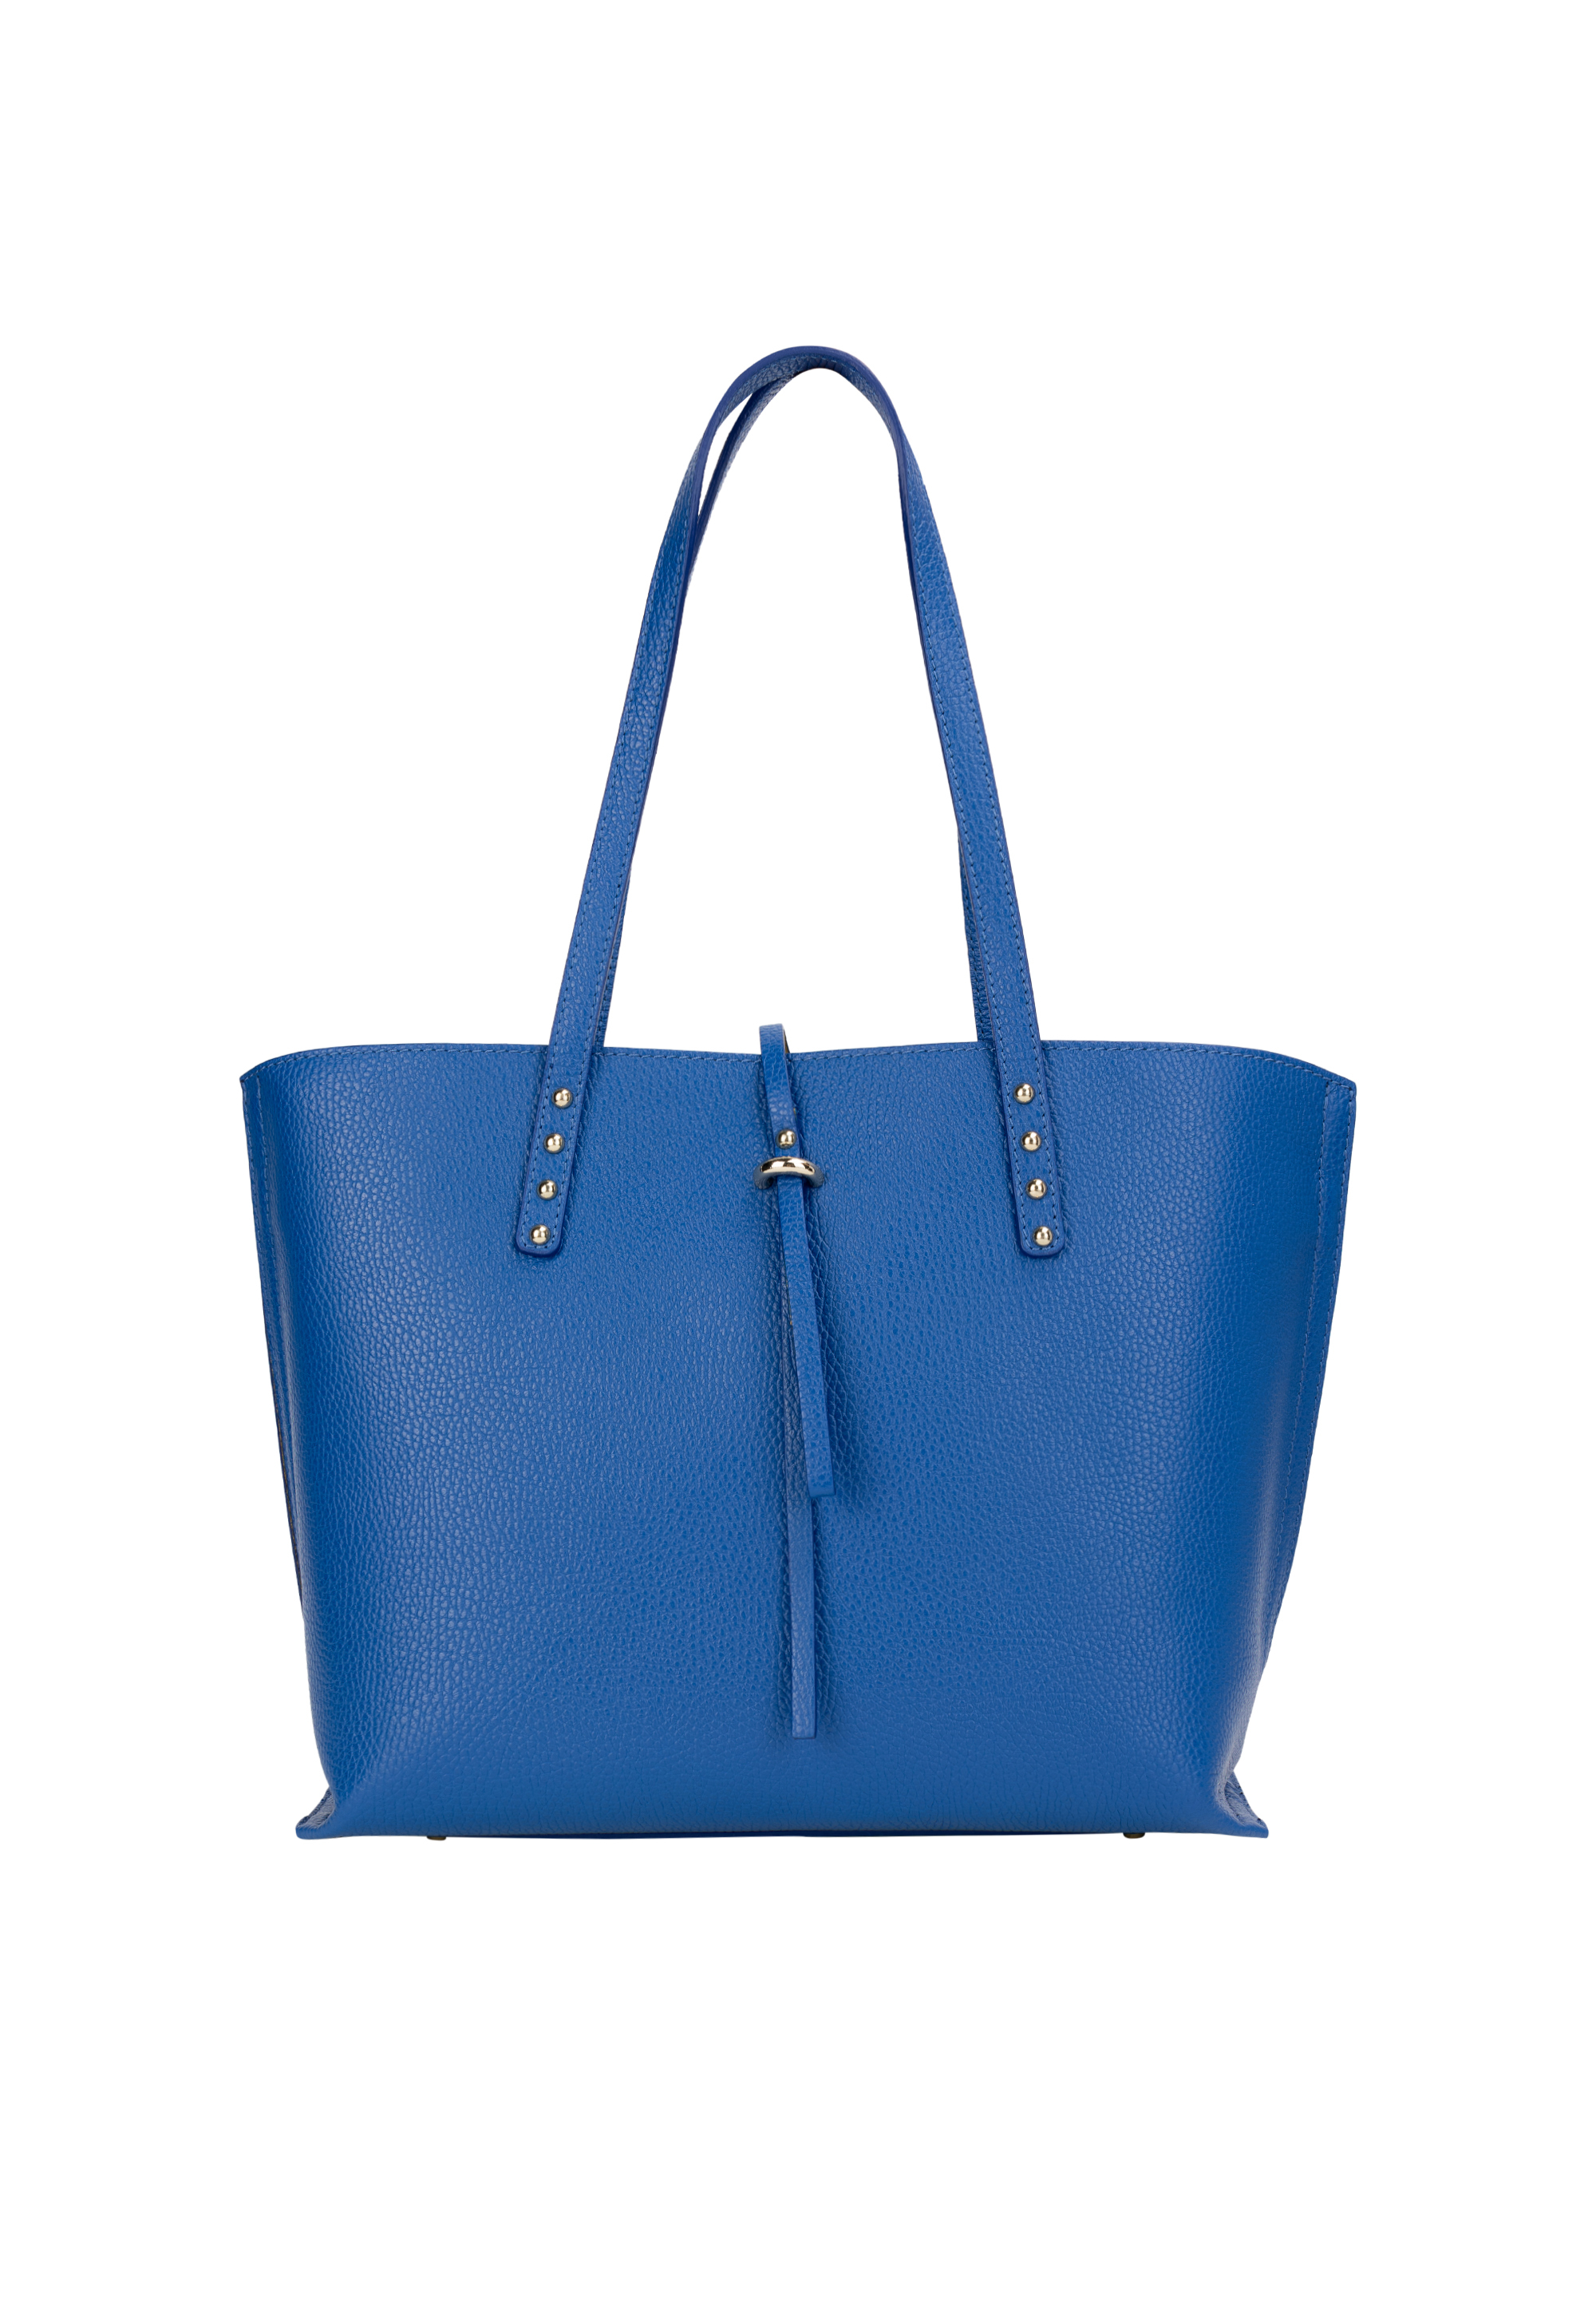 Сумка через плечо NAEMI Handtasche, цвет Azurblau сумка через плечо naemi handtasche цвет azurblau